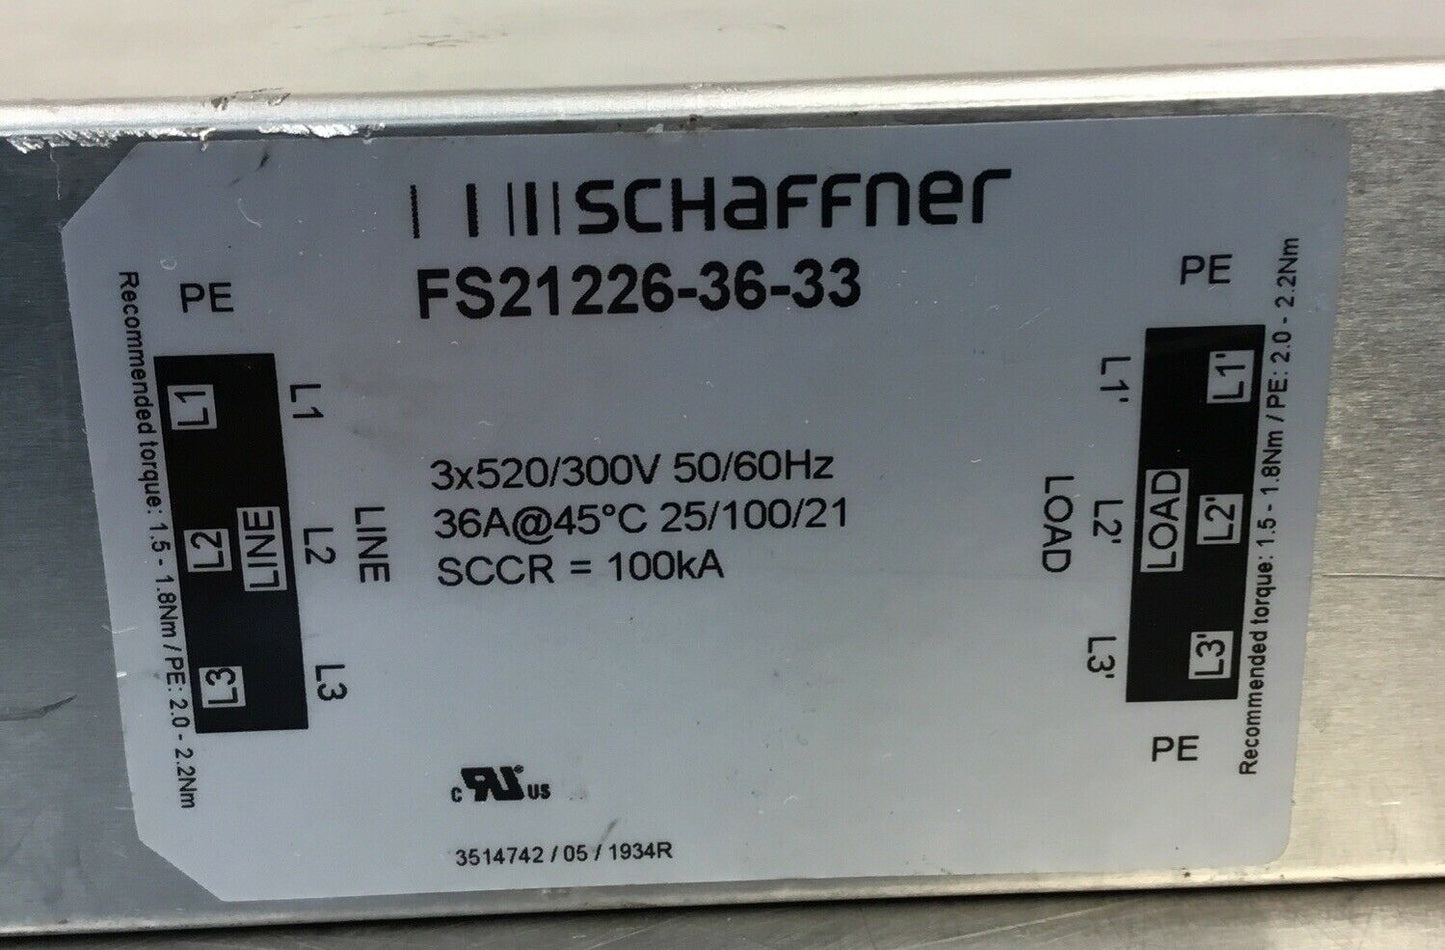 Sew Eurodrive NF035-503 / Schaffner FS21226-36-33 AC Netzfilter   Loc.1A